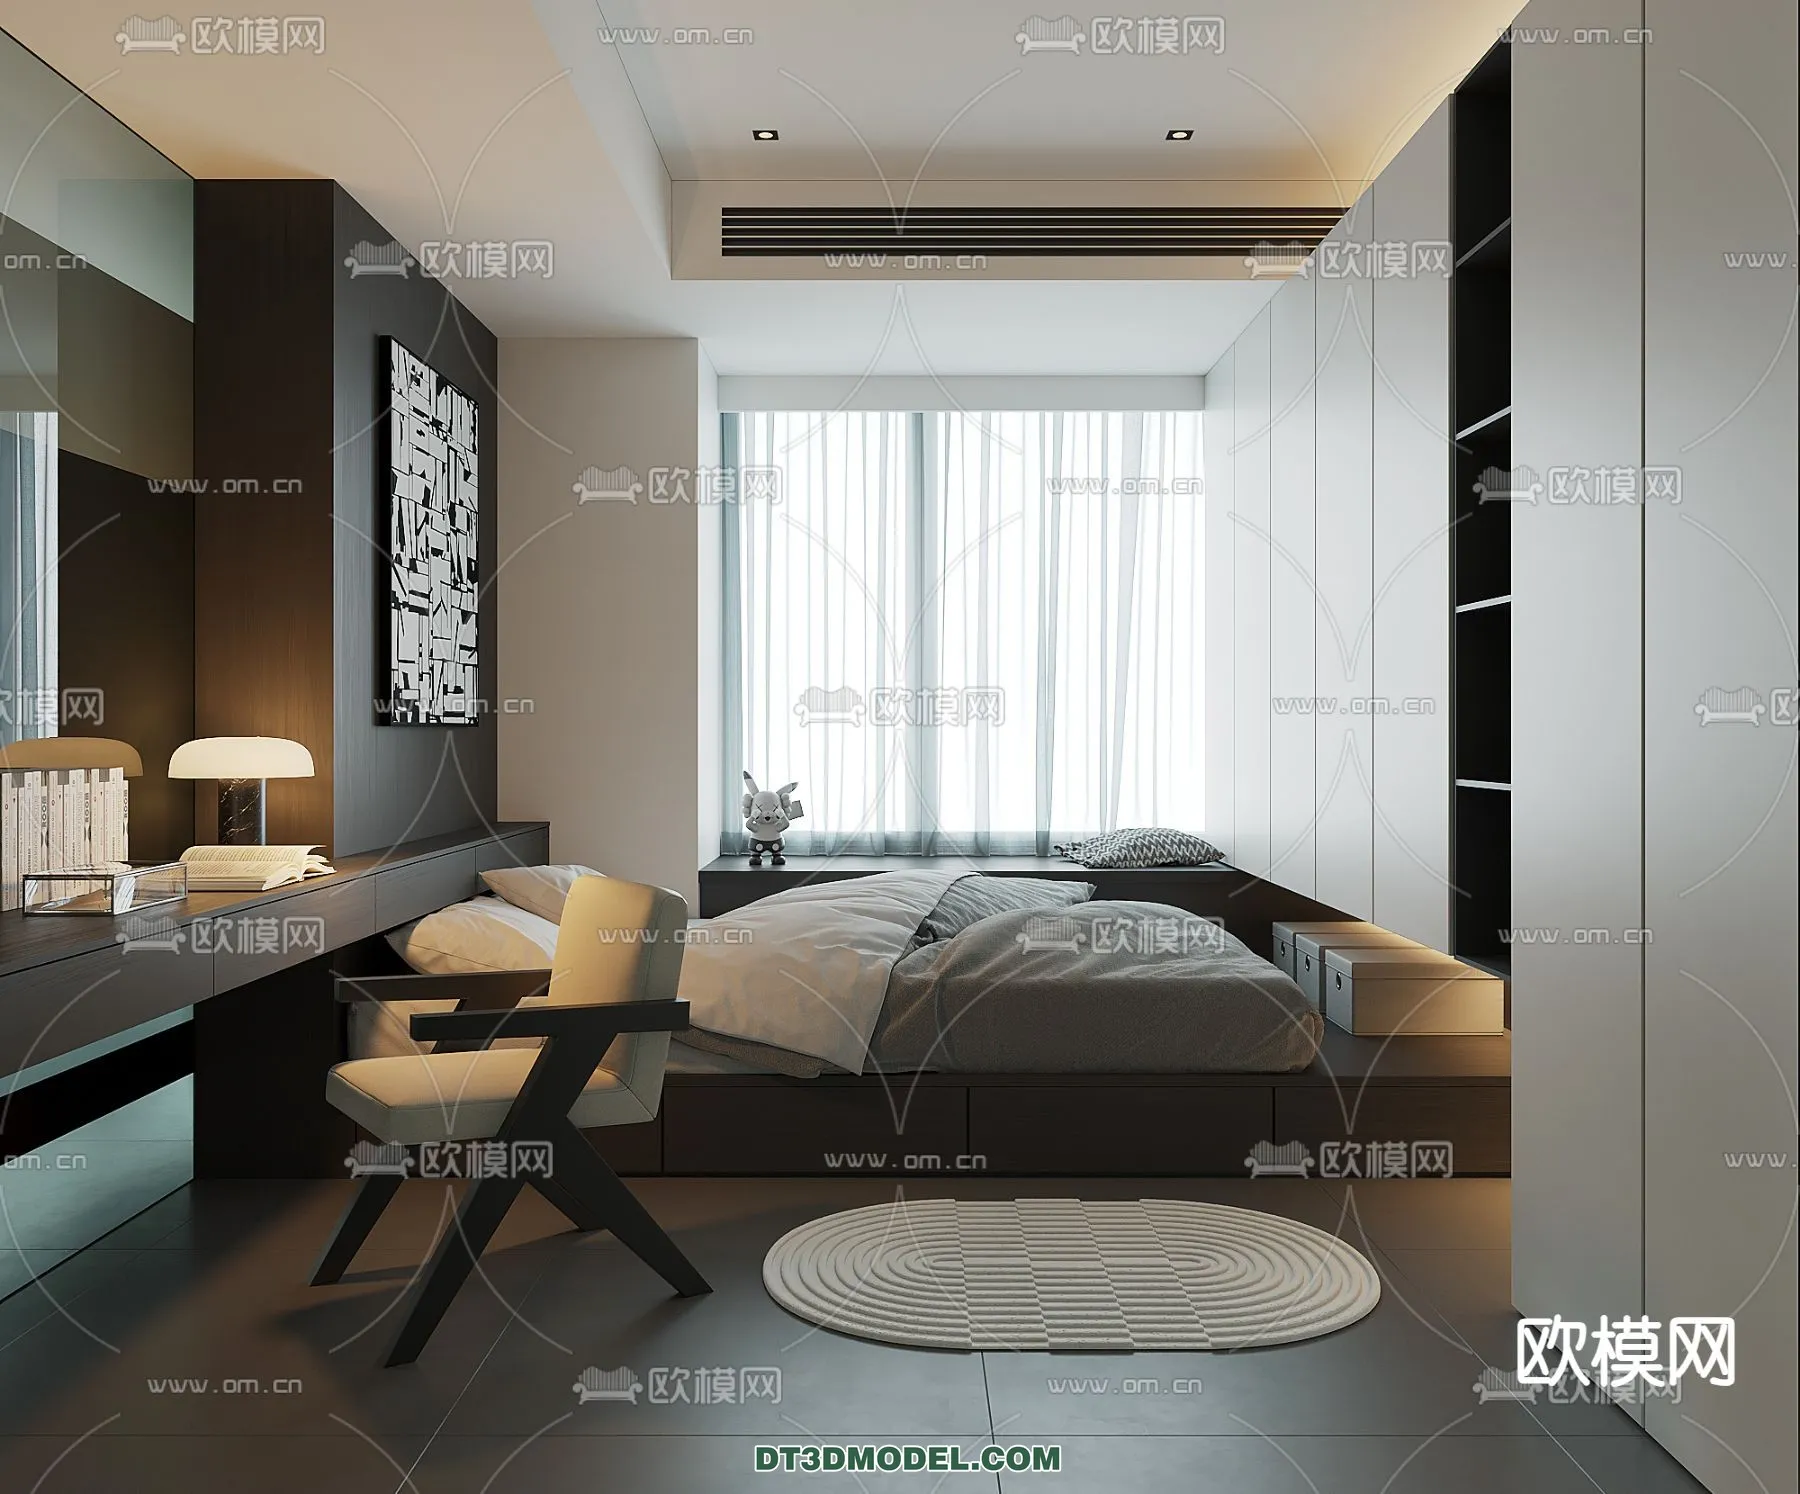 Tatami Bedroom – Japan Bedroom – 3D Scene – 009